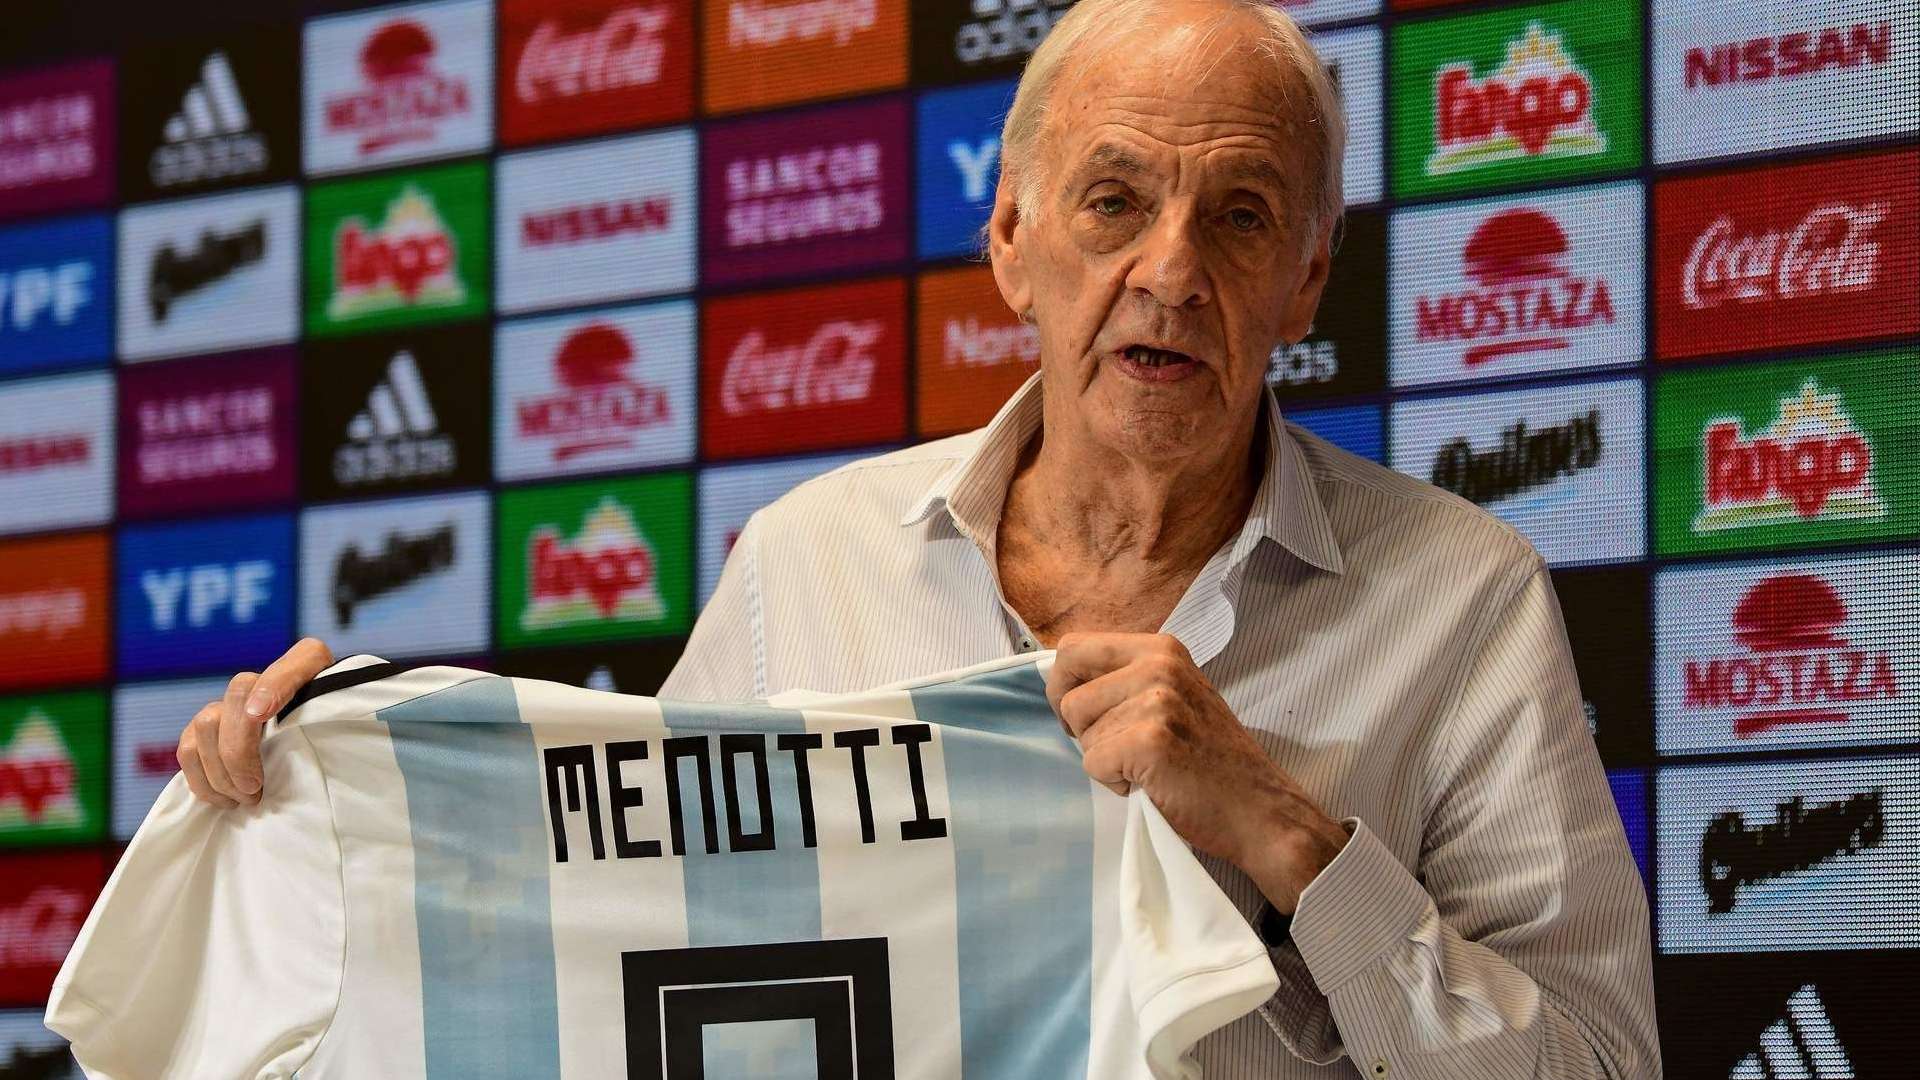 Menotti Director Selecciones Nacionales Argentina